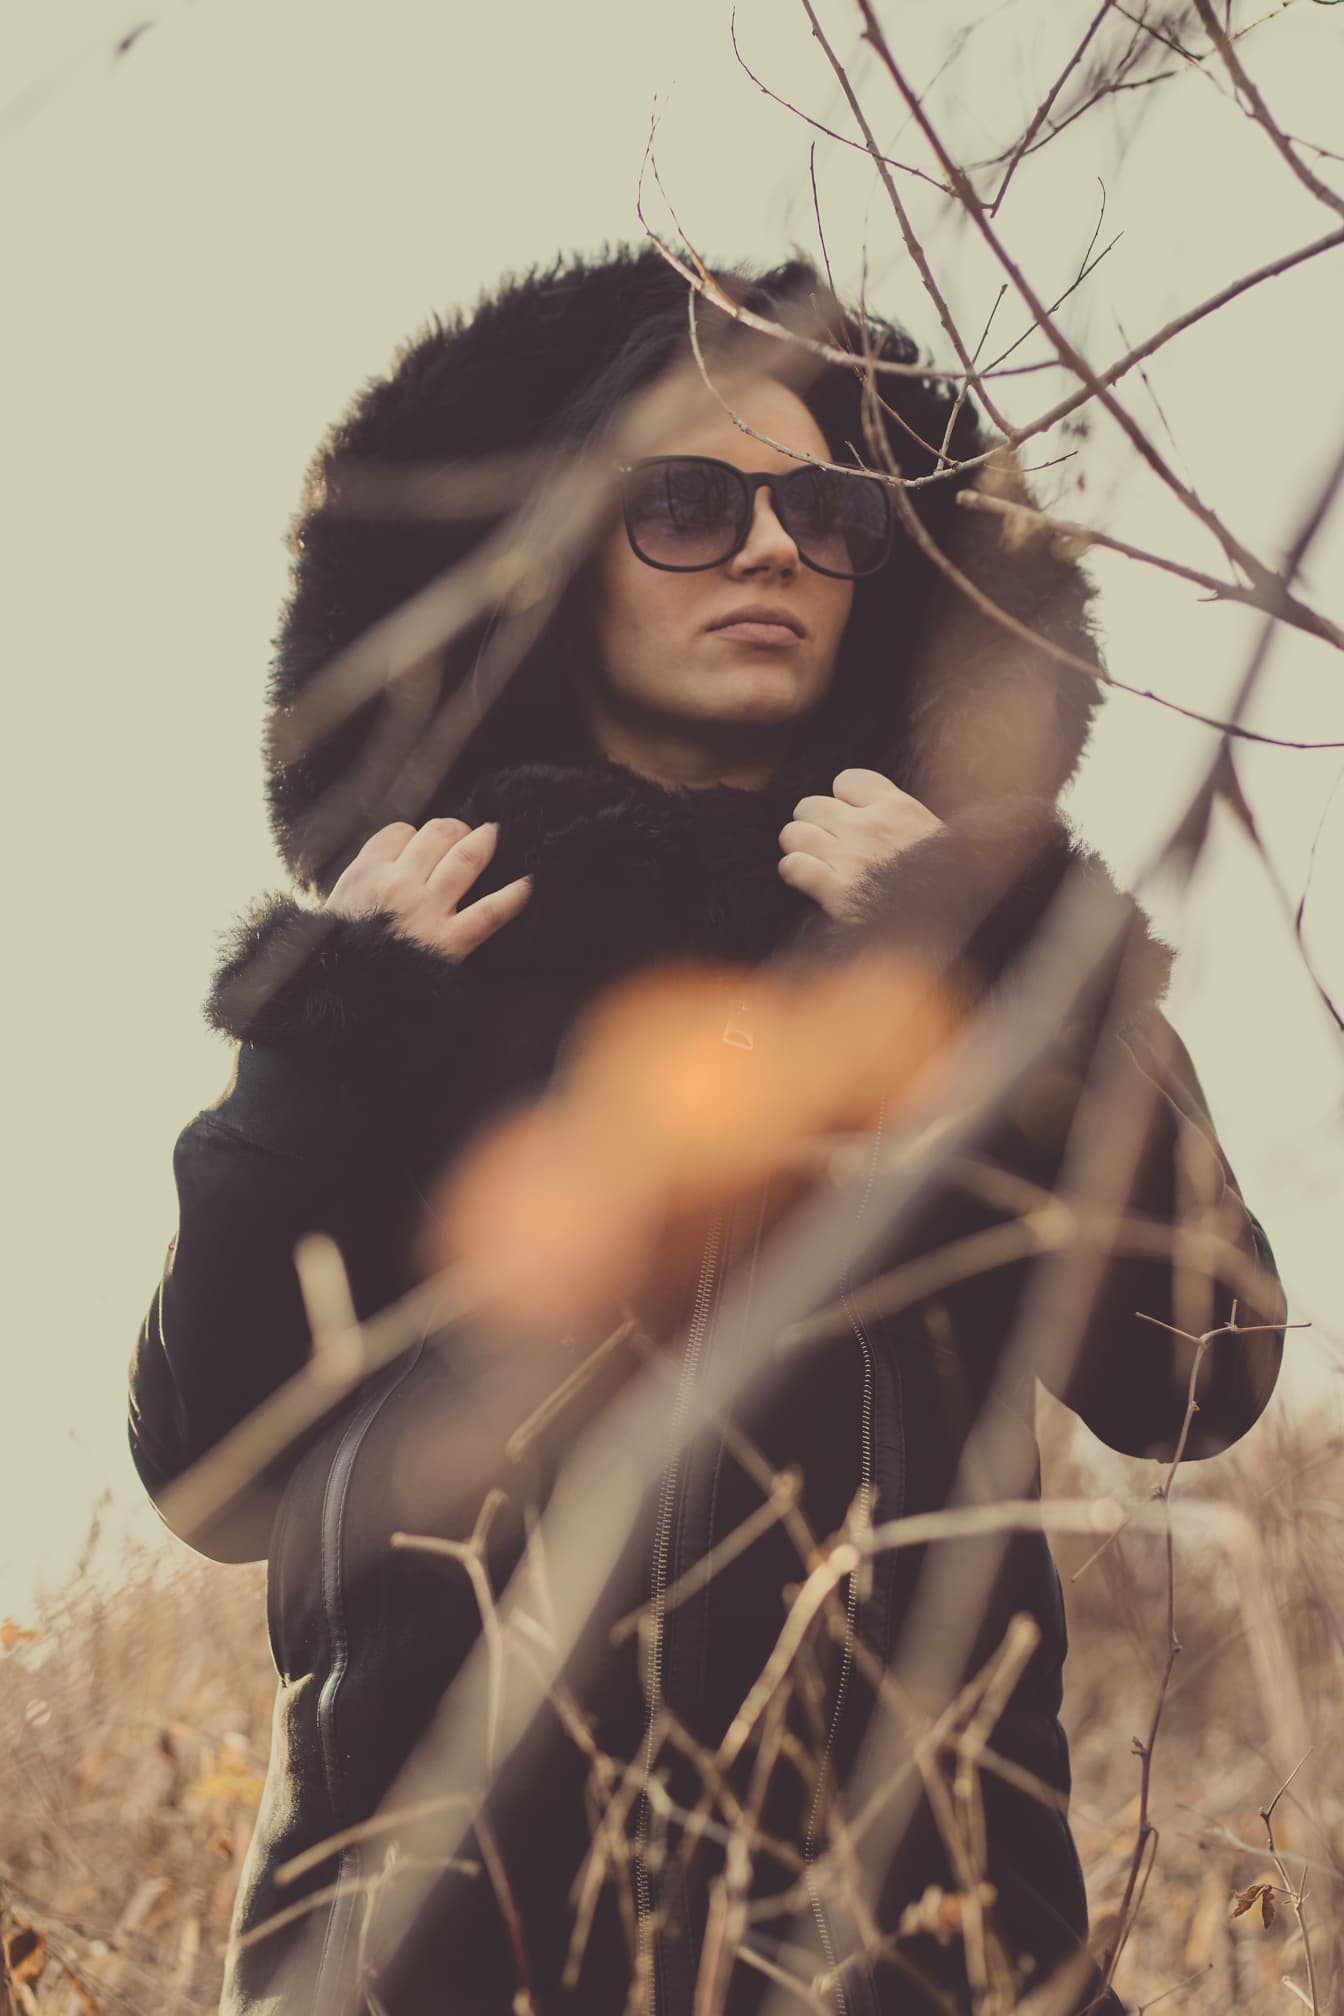 Portræt af en kvinde iført pelsjakke med hætte og solbriller